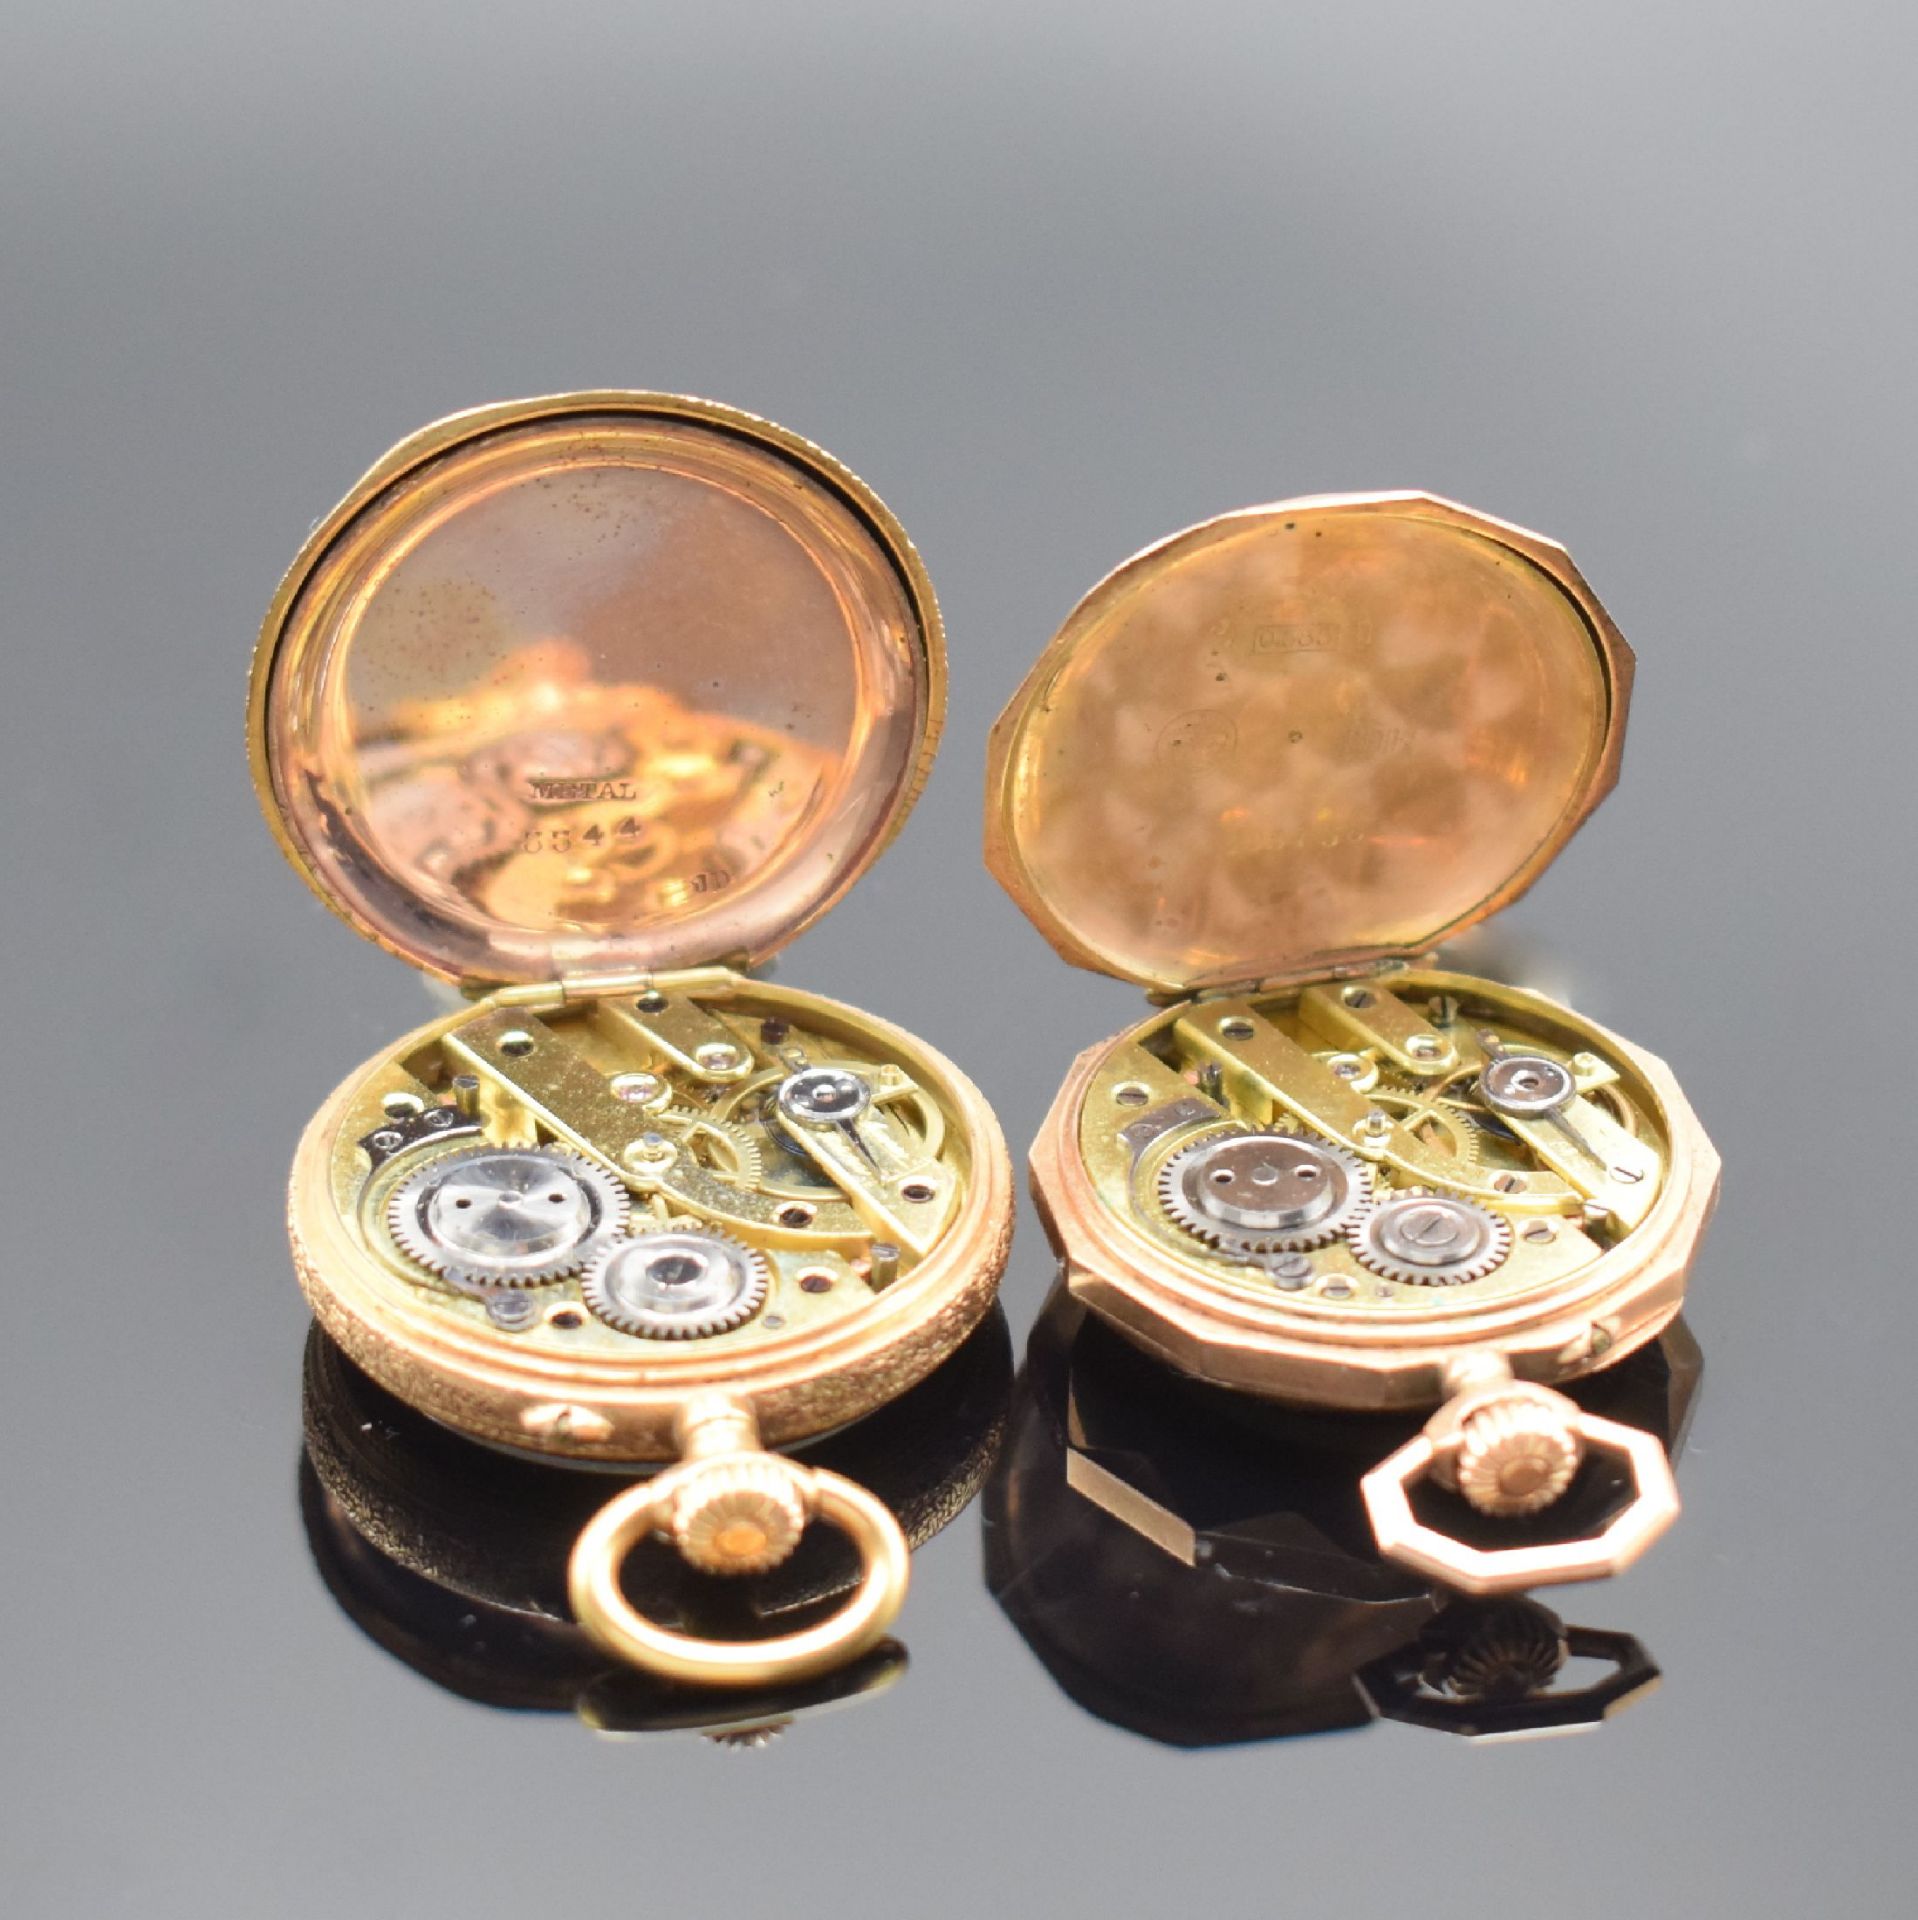 2 Damentaschenuhren in RG 585/000, Schweiz um 1880/1900, - Image 5 of 6